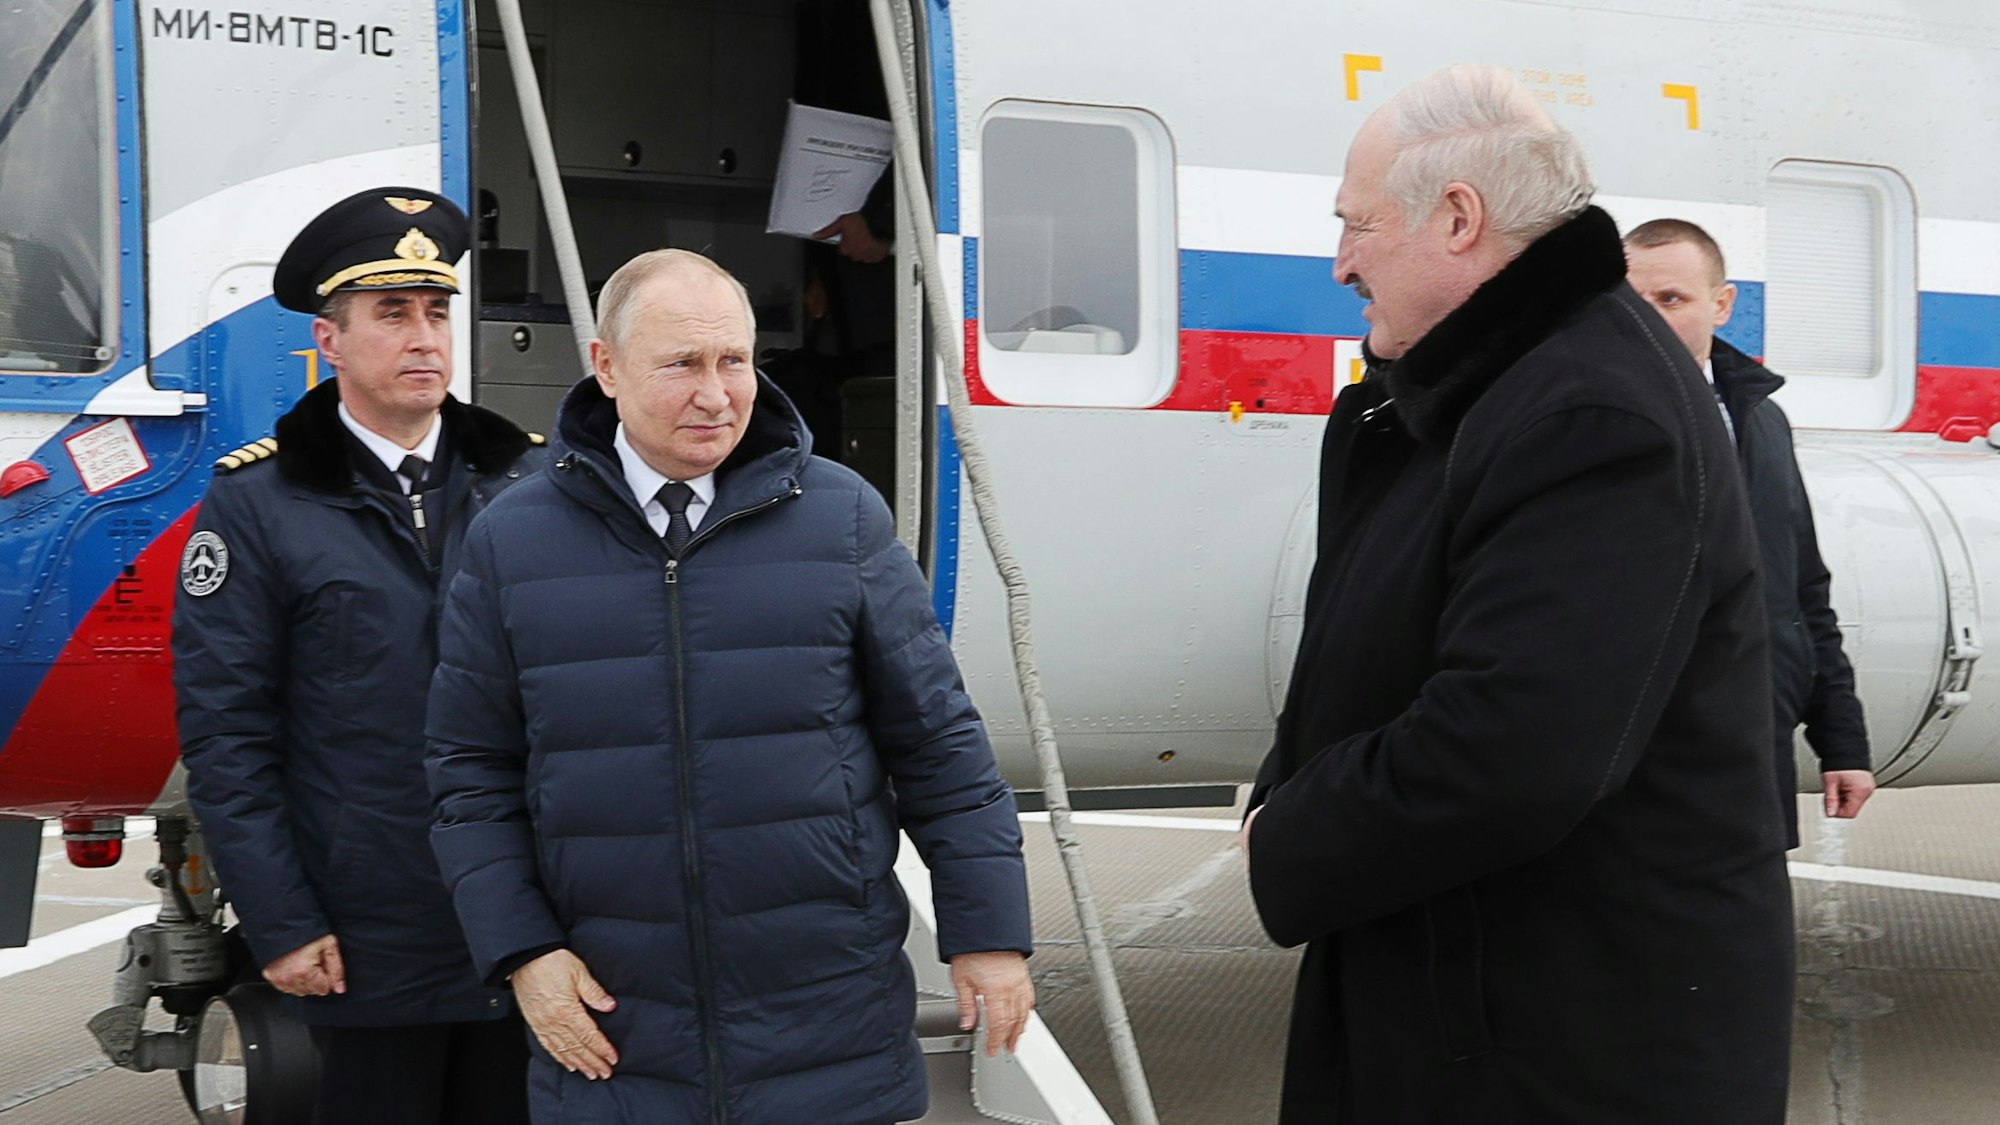 Ganz aufs Fliegen verzichtet Wladimir Putin nicht. Bei längeren Distanzen, wie hier zum Östlichen Weltraumbahnhof Kosmodrom Wostotschny nahe der chinesischen Grenze, flog Putin im April letzten Jahres noch mit dem Flugzeug.